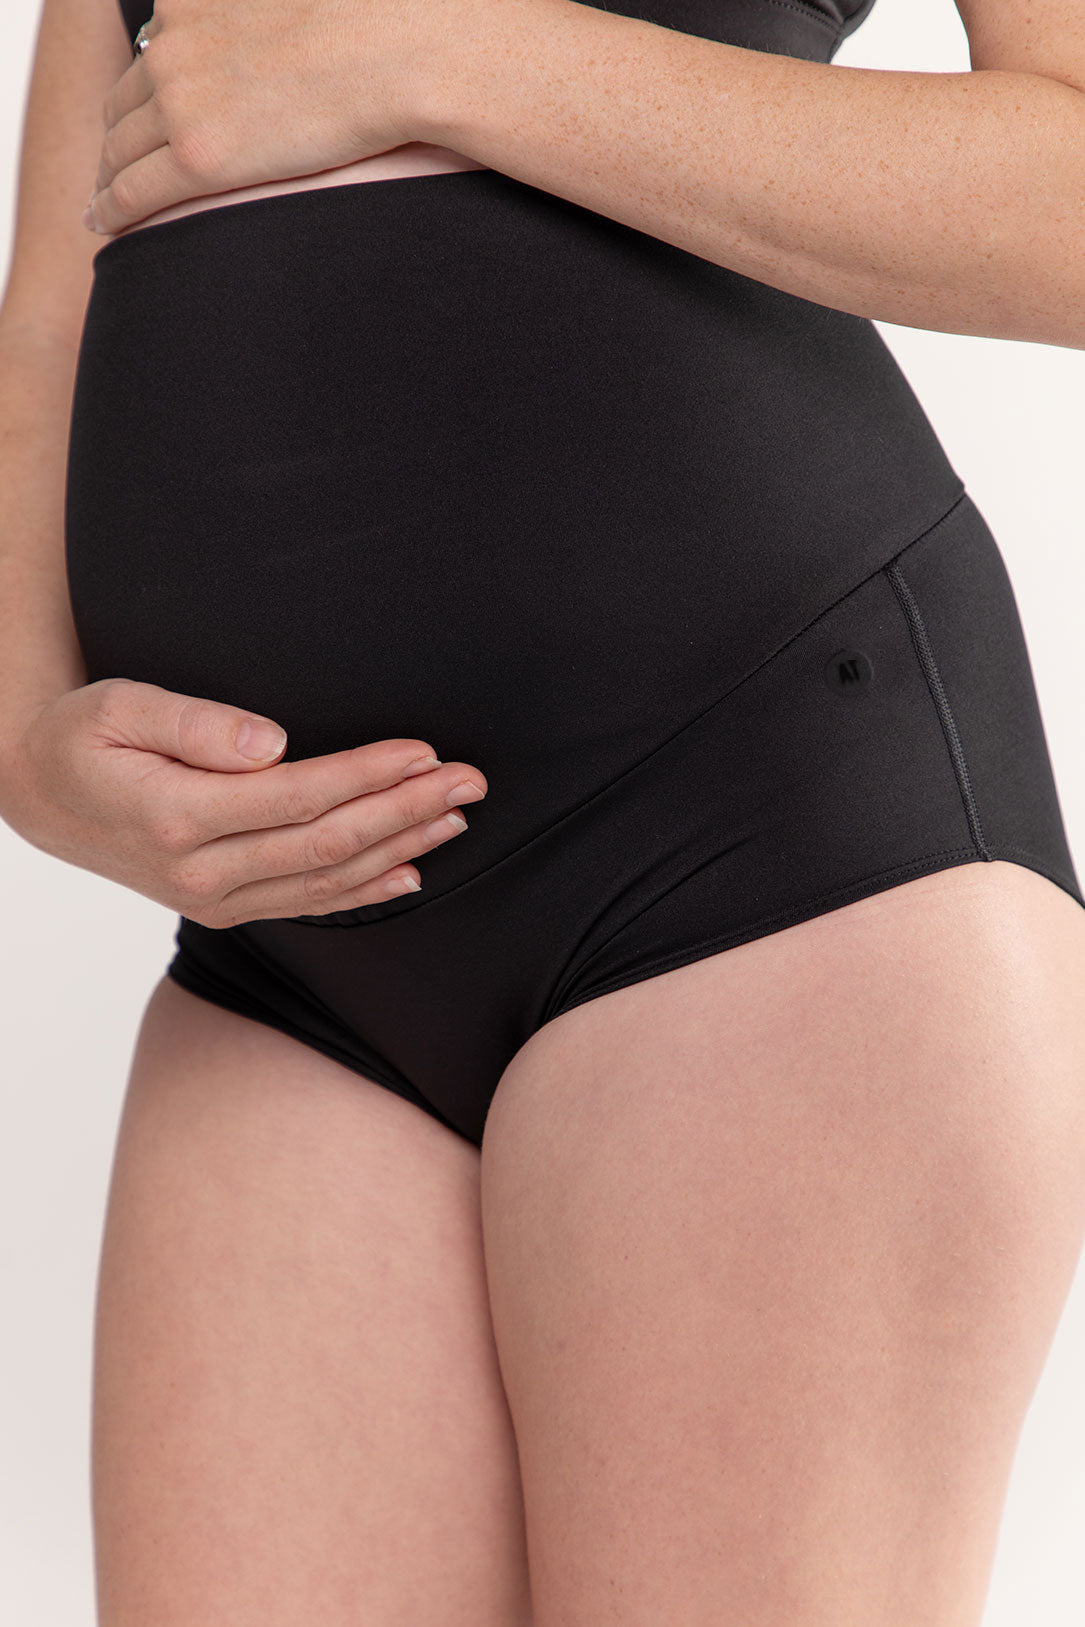 https://www.activetruth.com.au/cdn/shop/products/maternity-brief-underwear-black-small-side2.jpg?v=1659482018